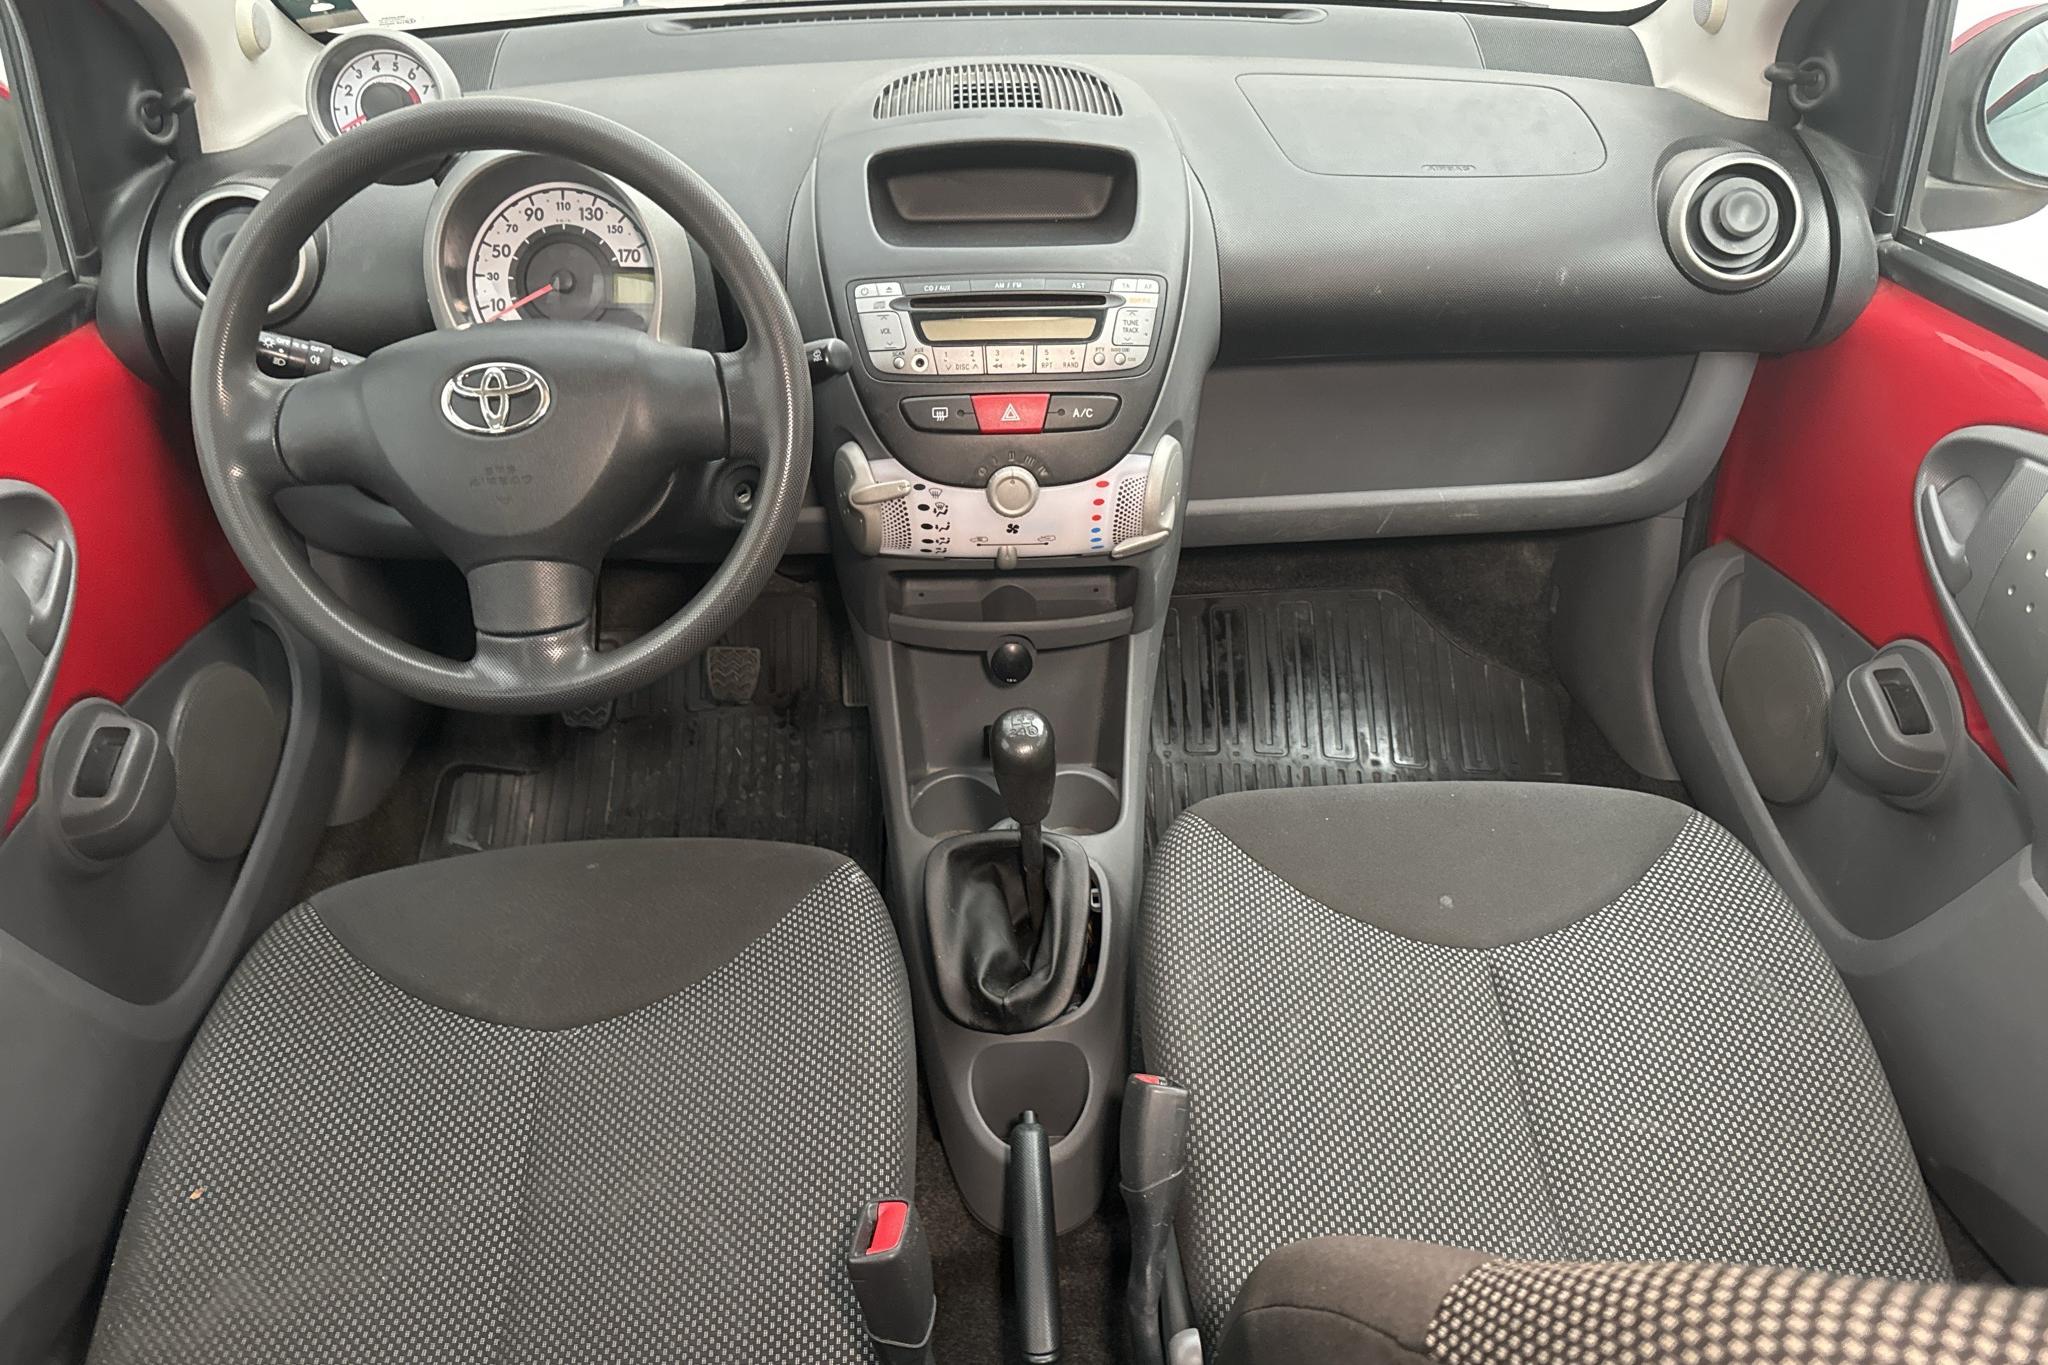 Toyota Aygo 1.0 VVT-i 5dr (68hk) - 10 673 mil - Manuell - röd - 2011